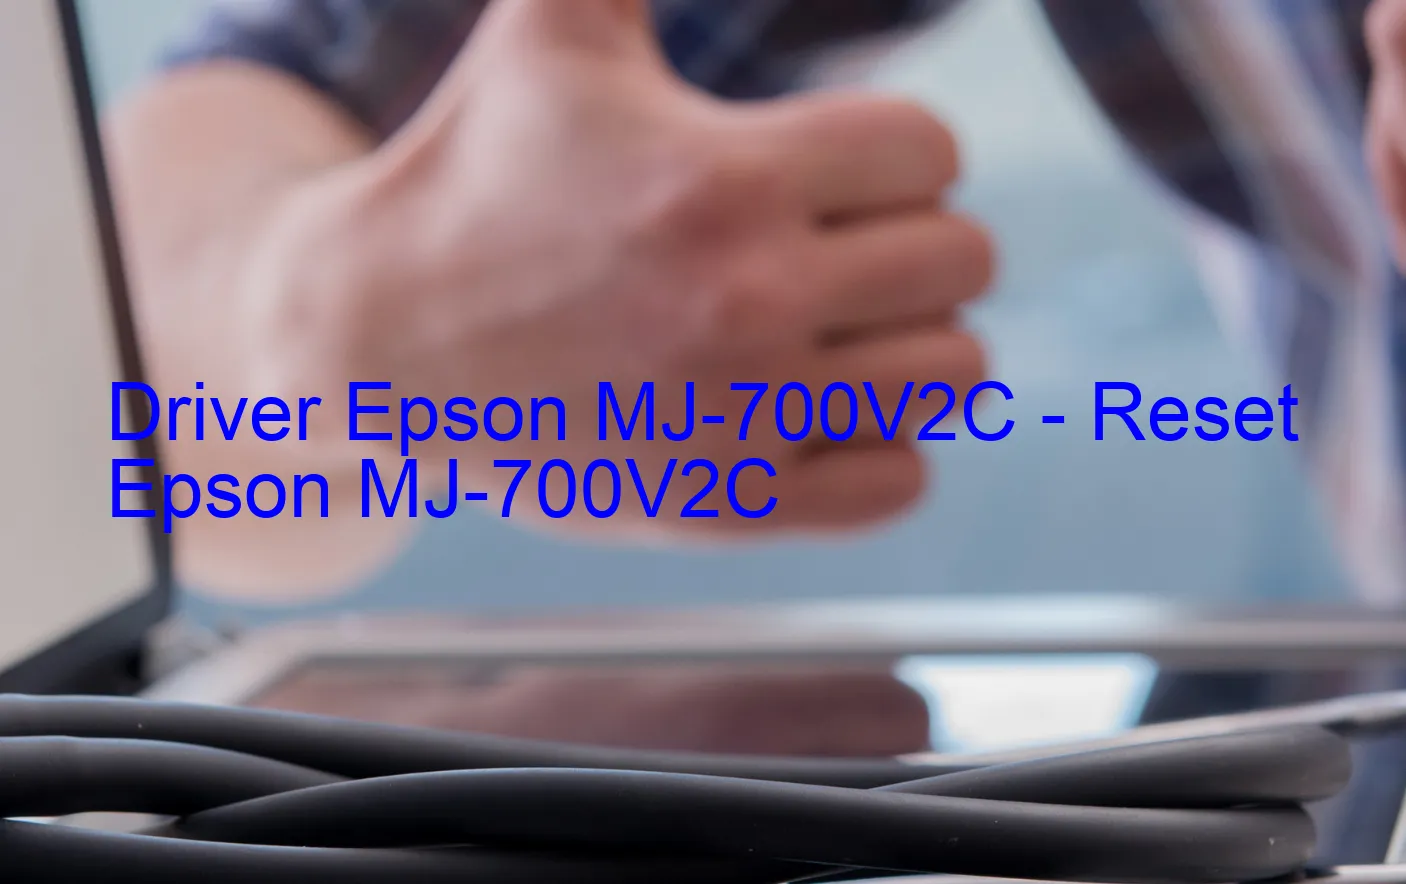 Epson MJ-700V2Cのドライバー、Epson MJ-700V2Cのリセットソフトウェア